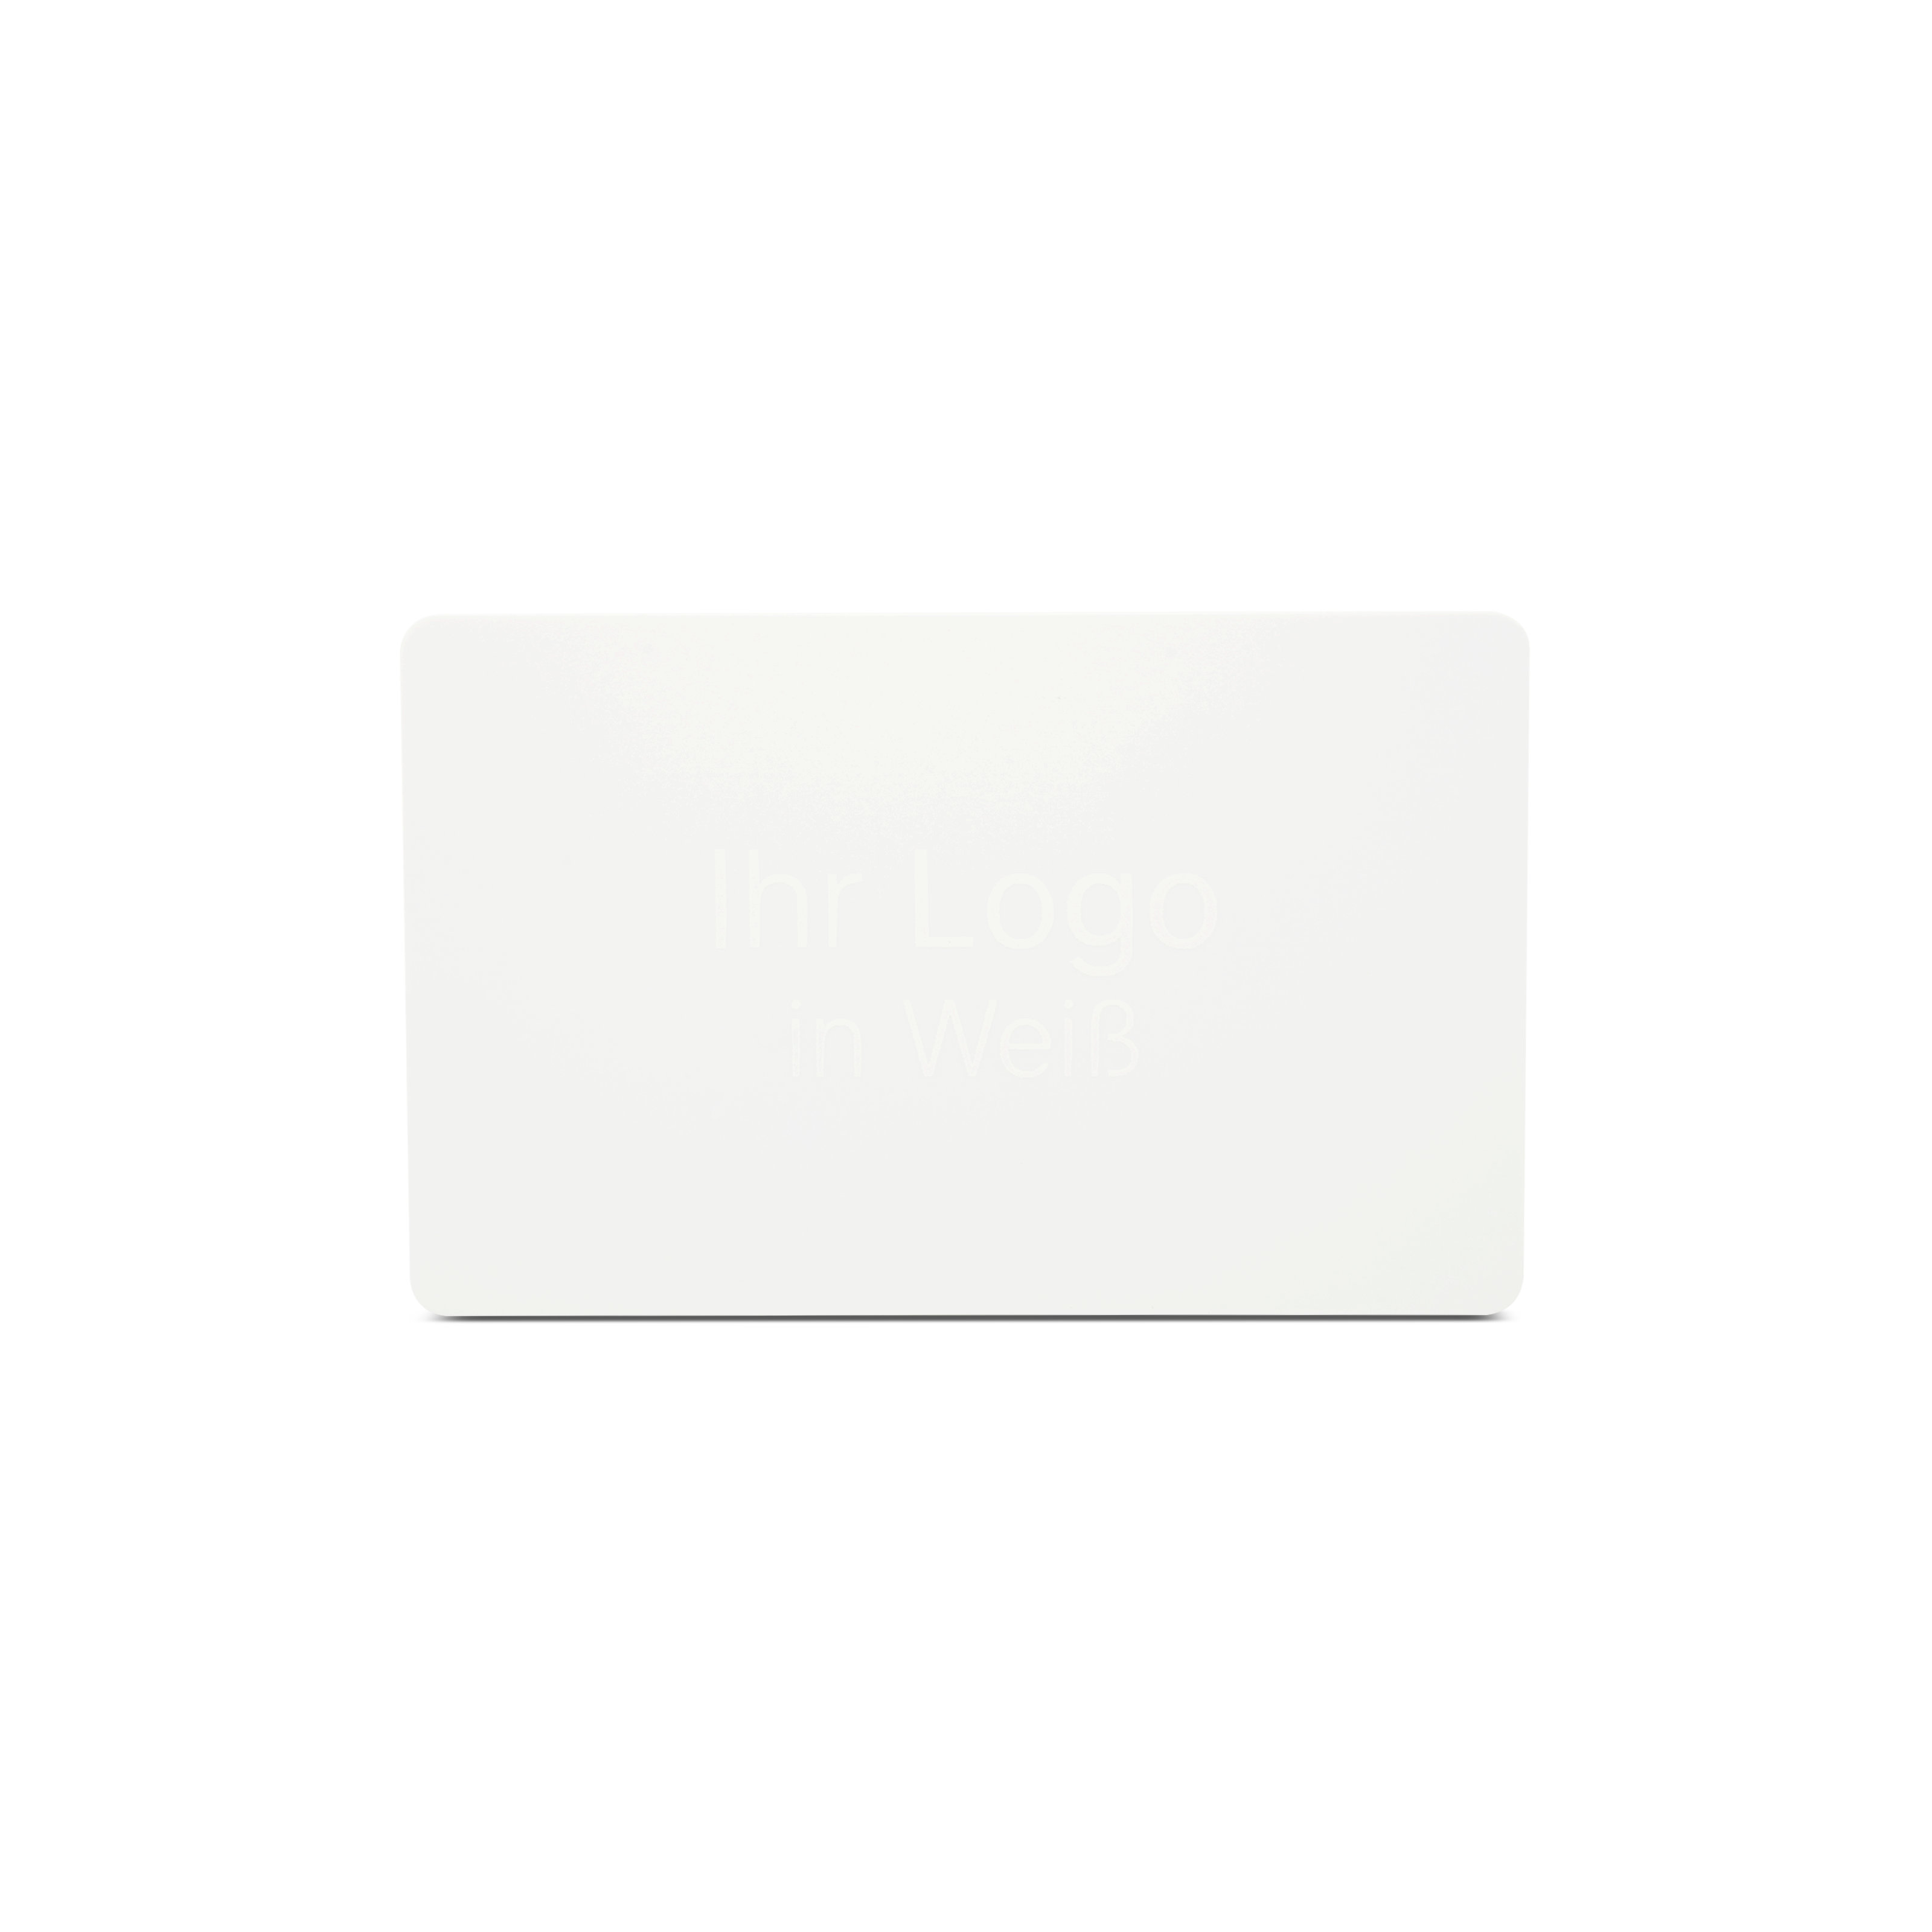 Weiße NFC Karte aus PVC